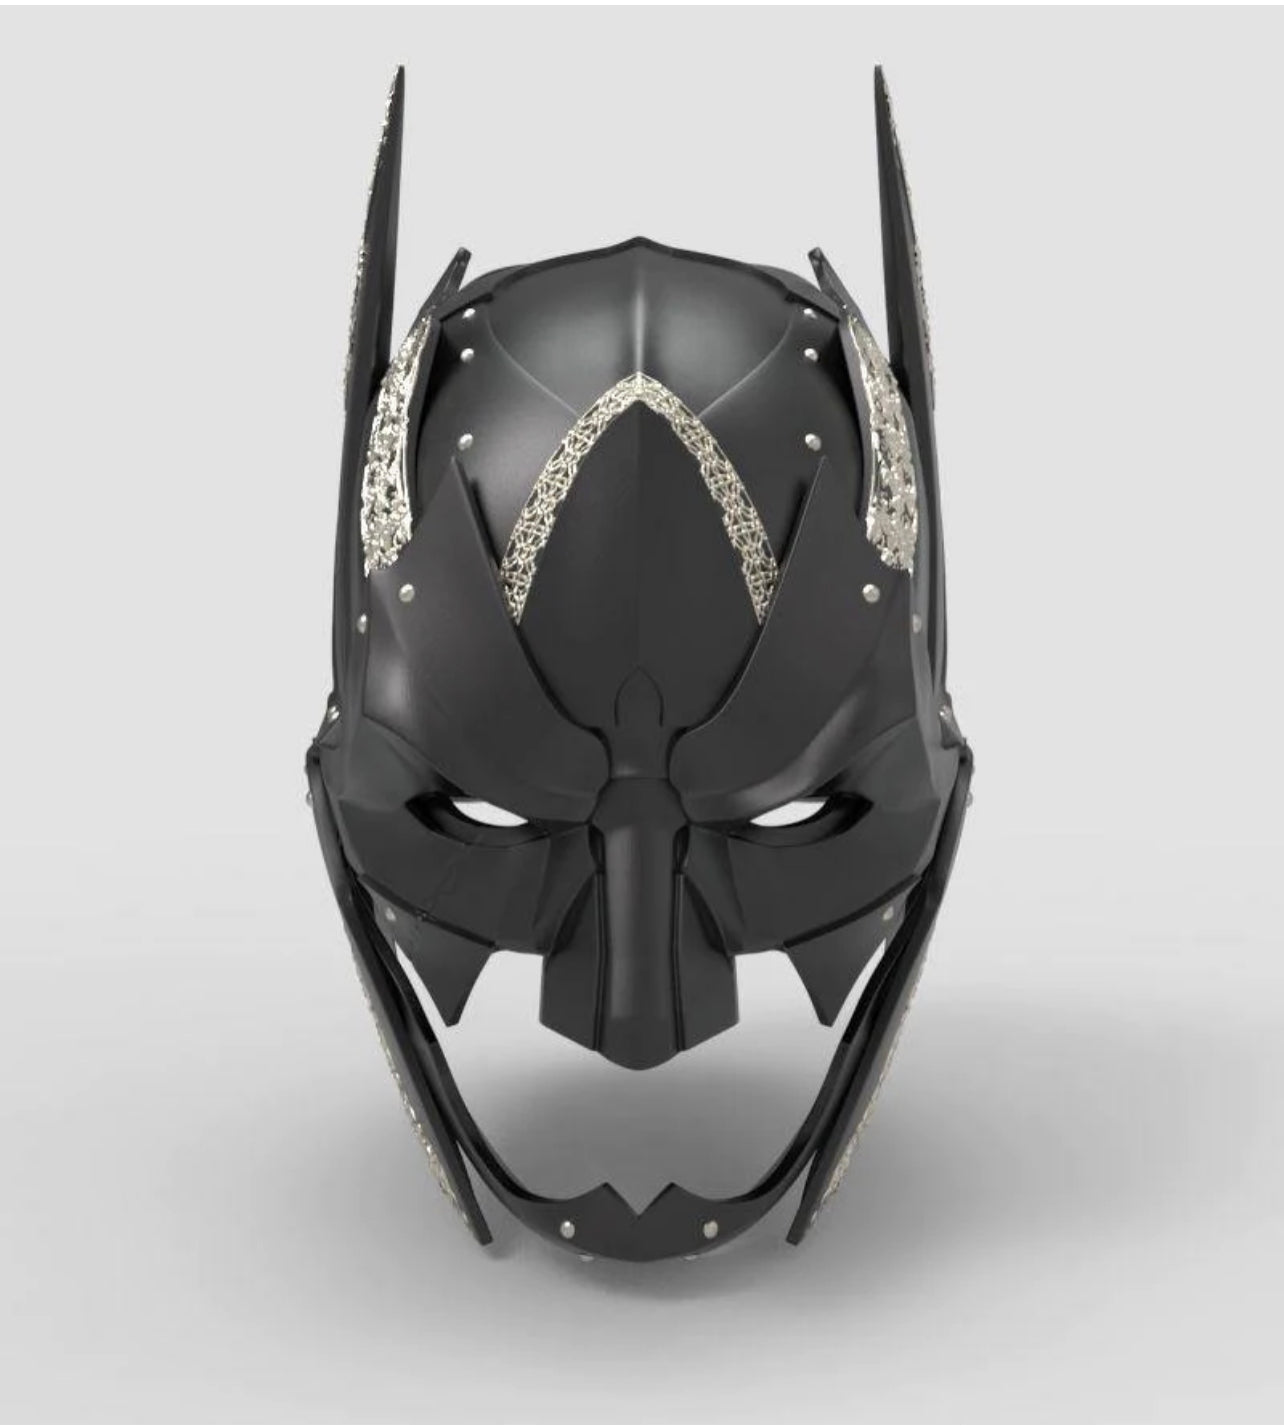 Medieval Batman Cosplay Concept